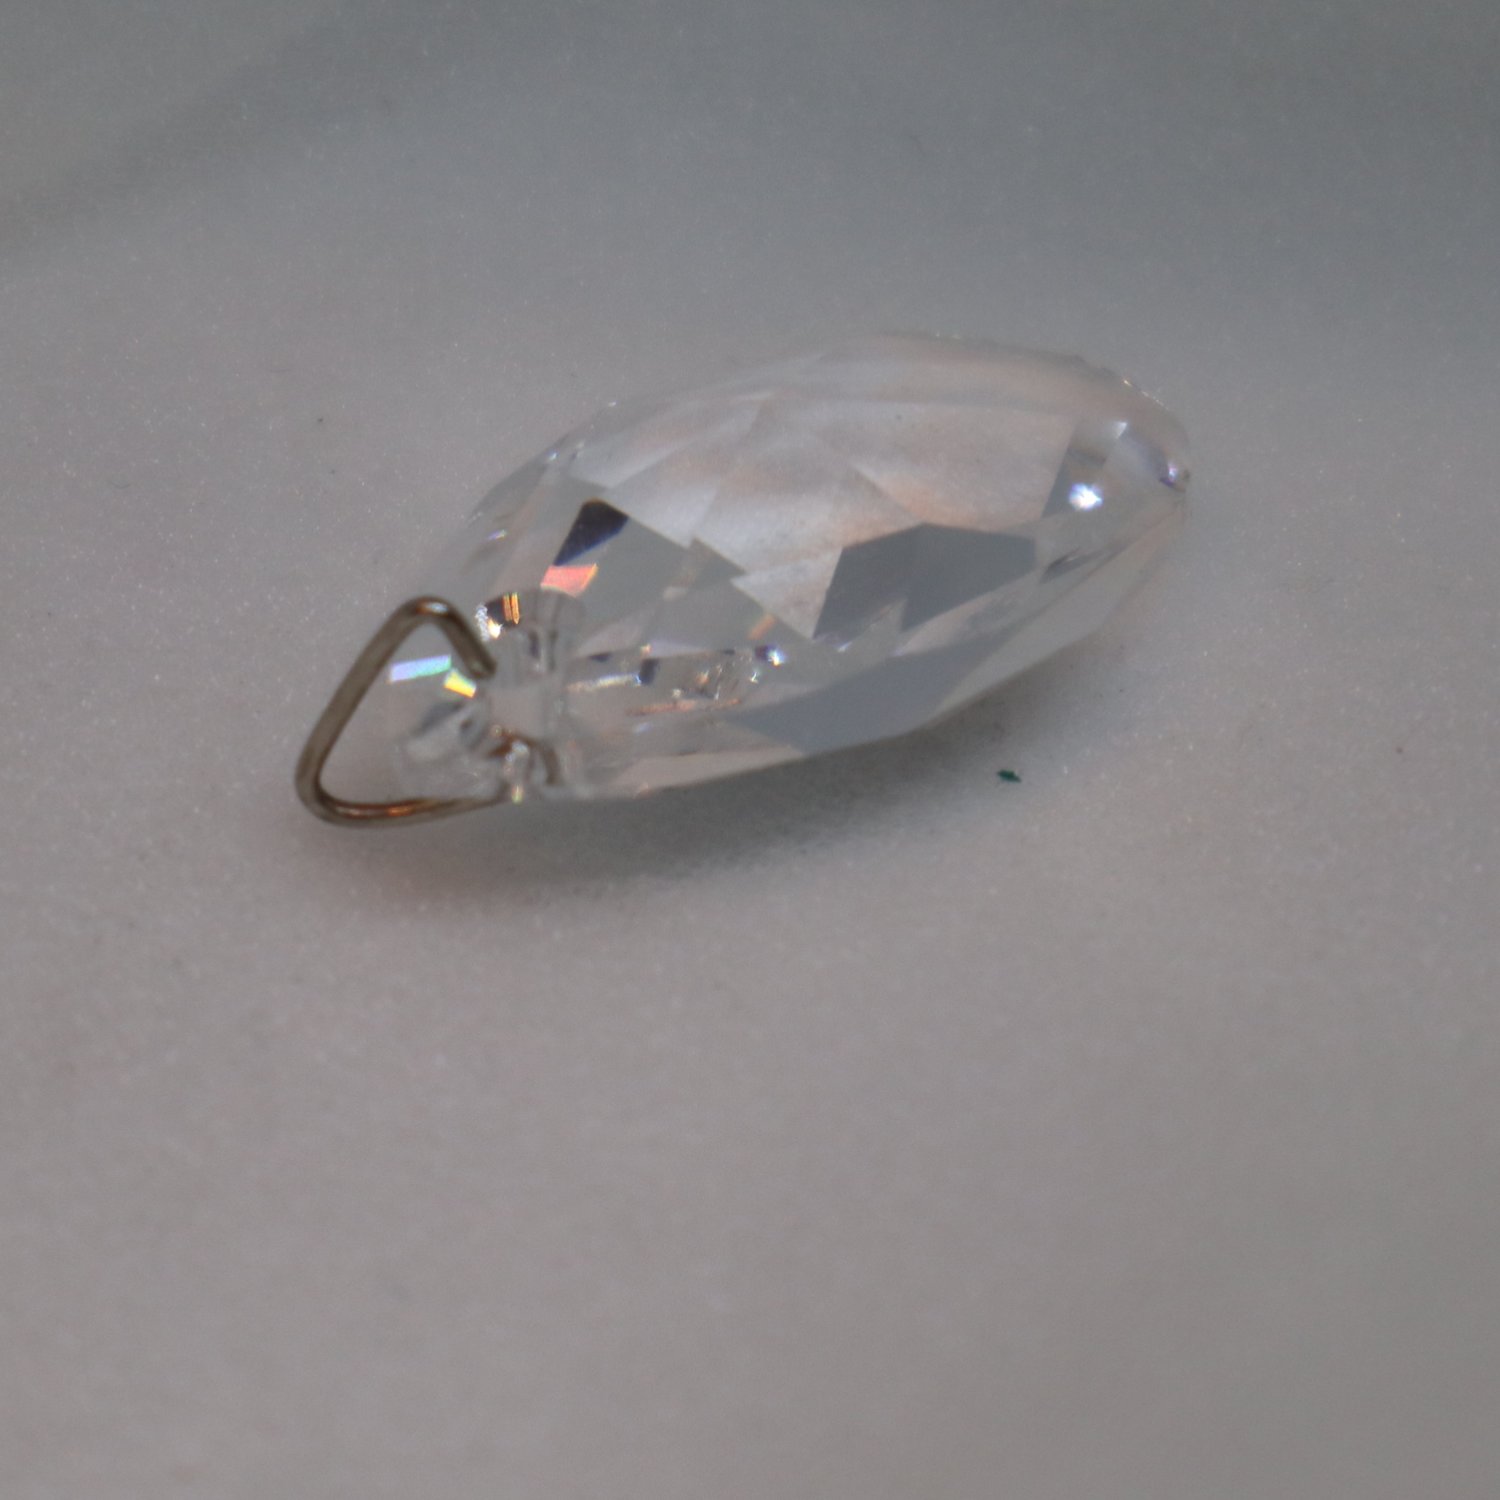 Hänge till halsband i form av större plast-diamant